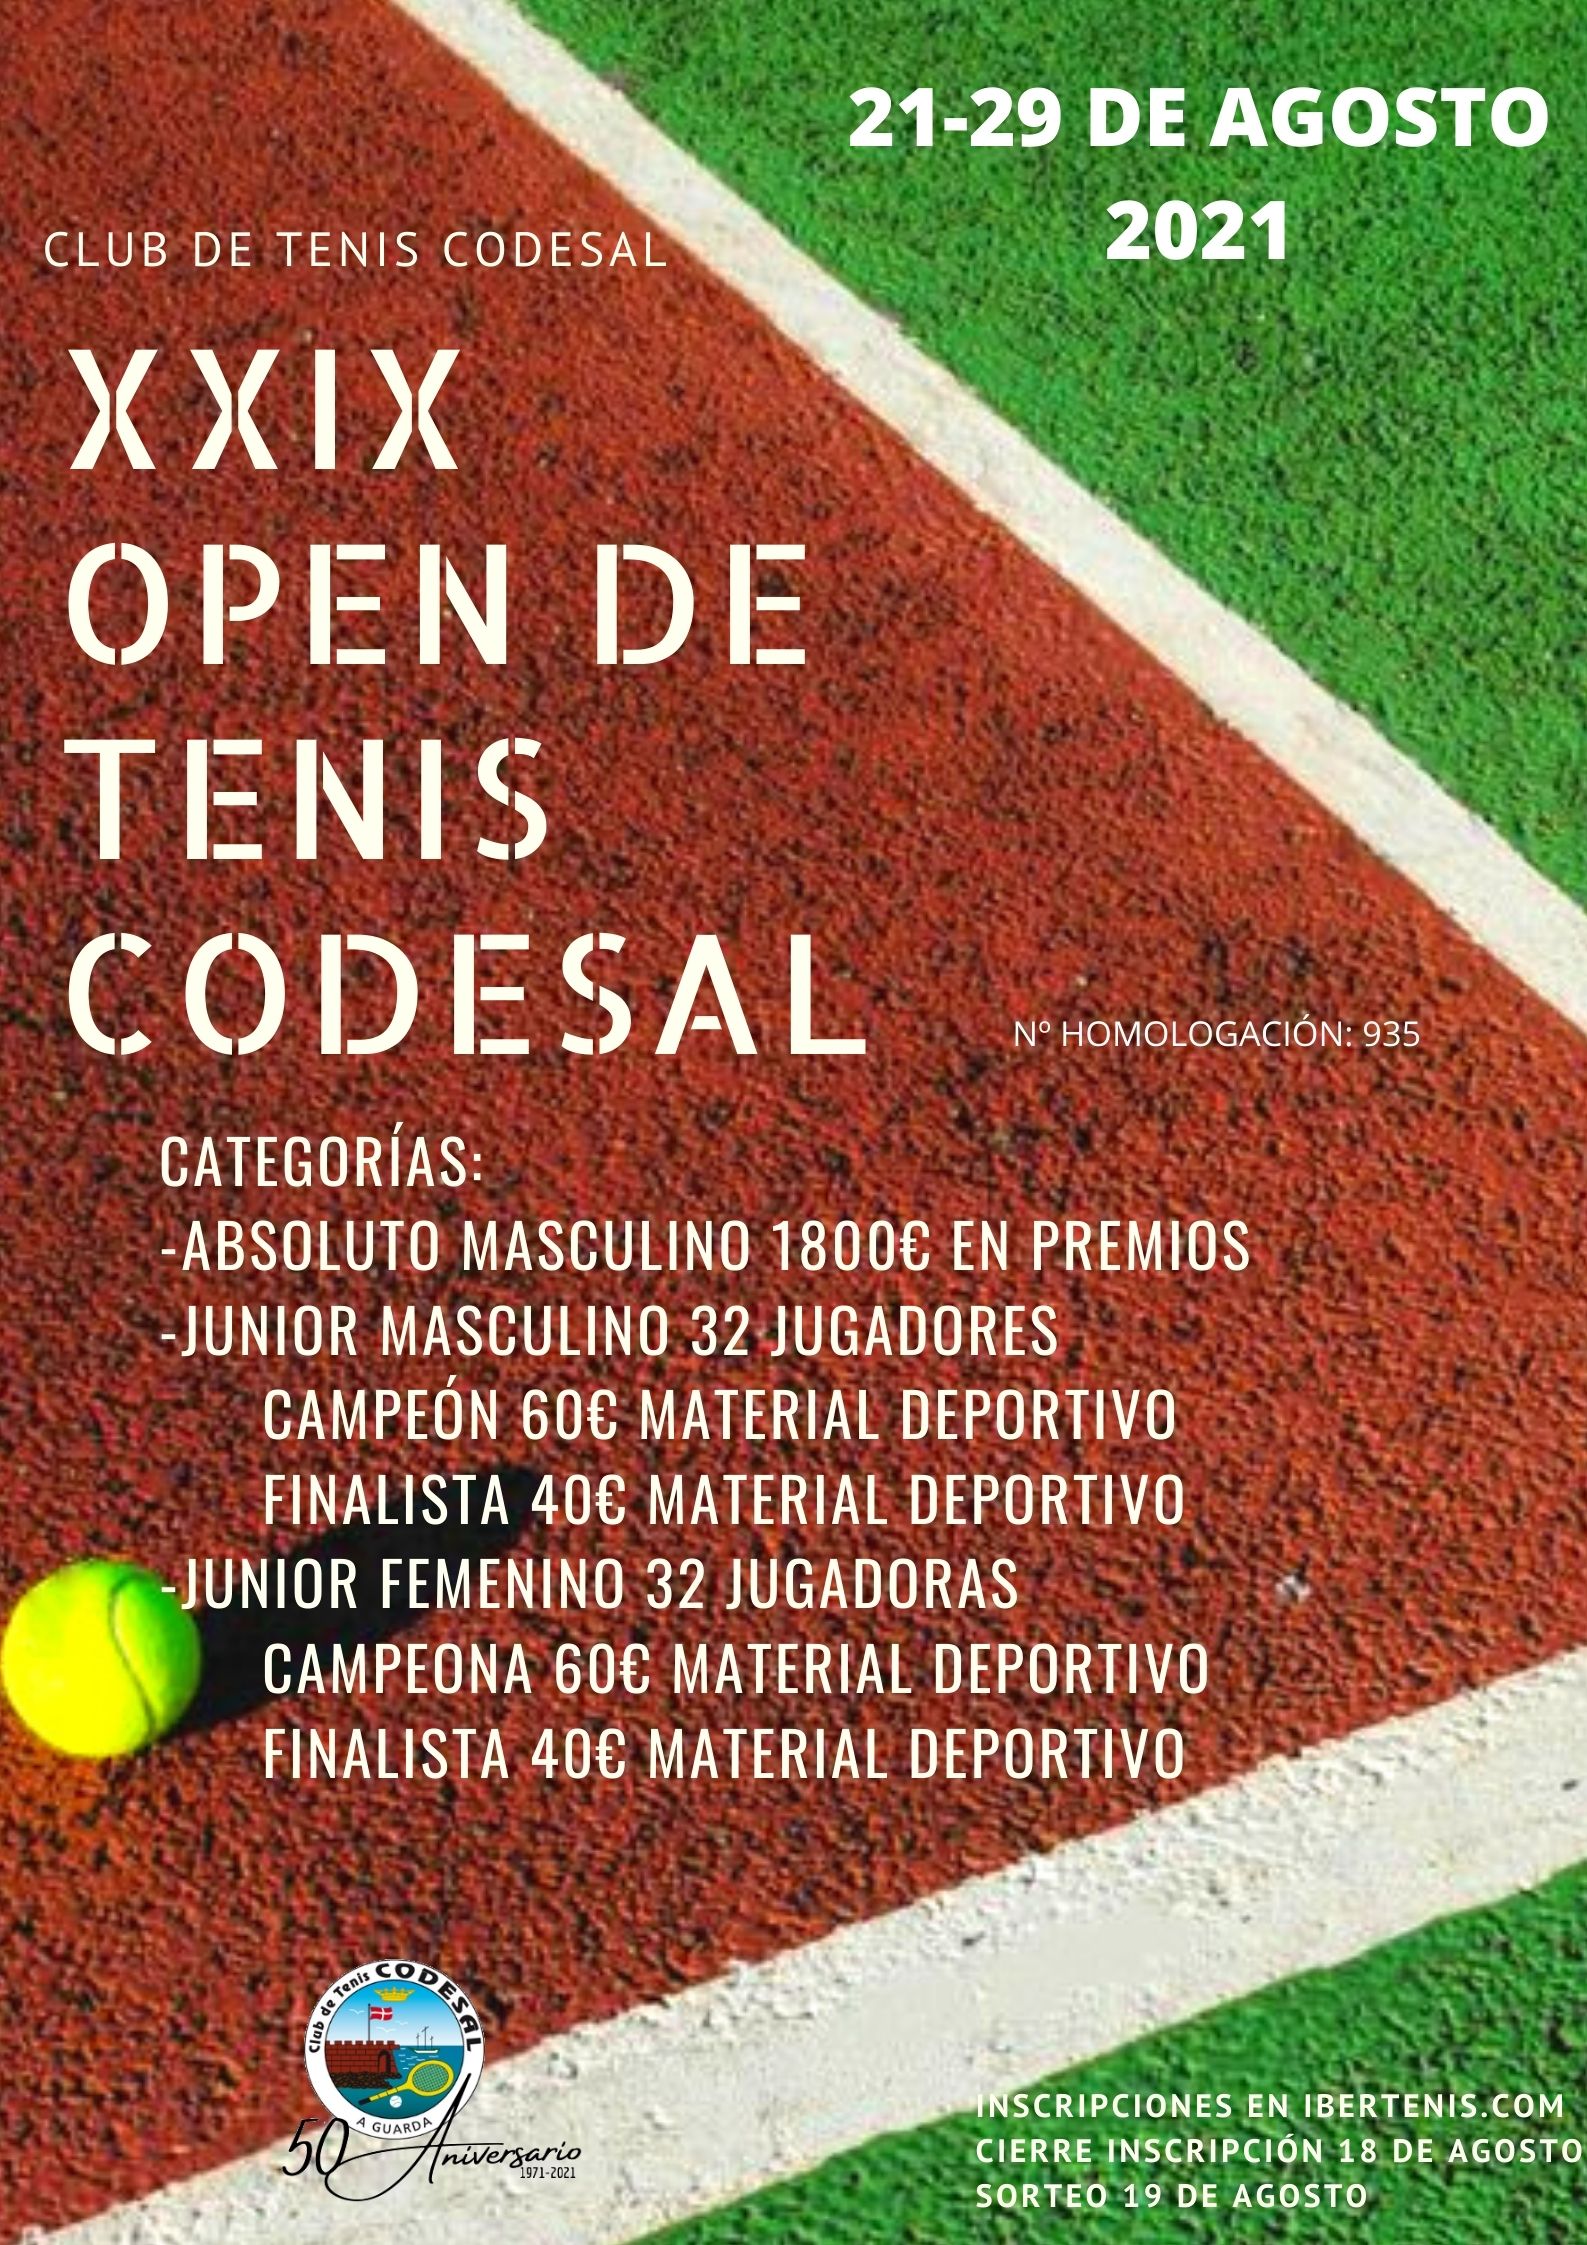 Cartel del XXIX OPEN CLUB DE TENIS CODESAL(1800€ EN PREMIOS CAT. ABSOLUTA- 100€ EN PREMIOS CAT. JUNIOR)